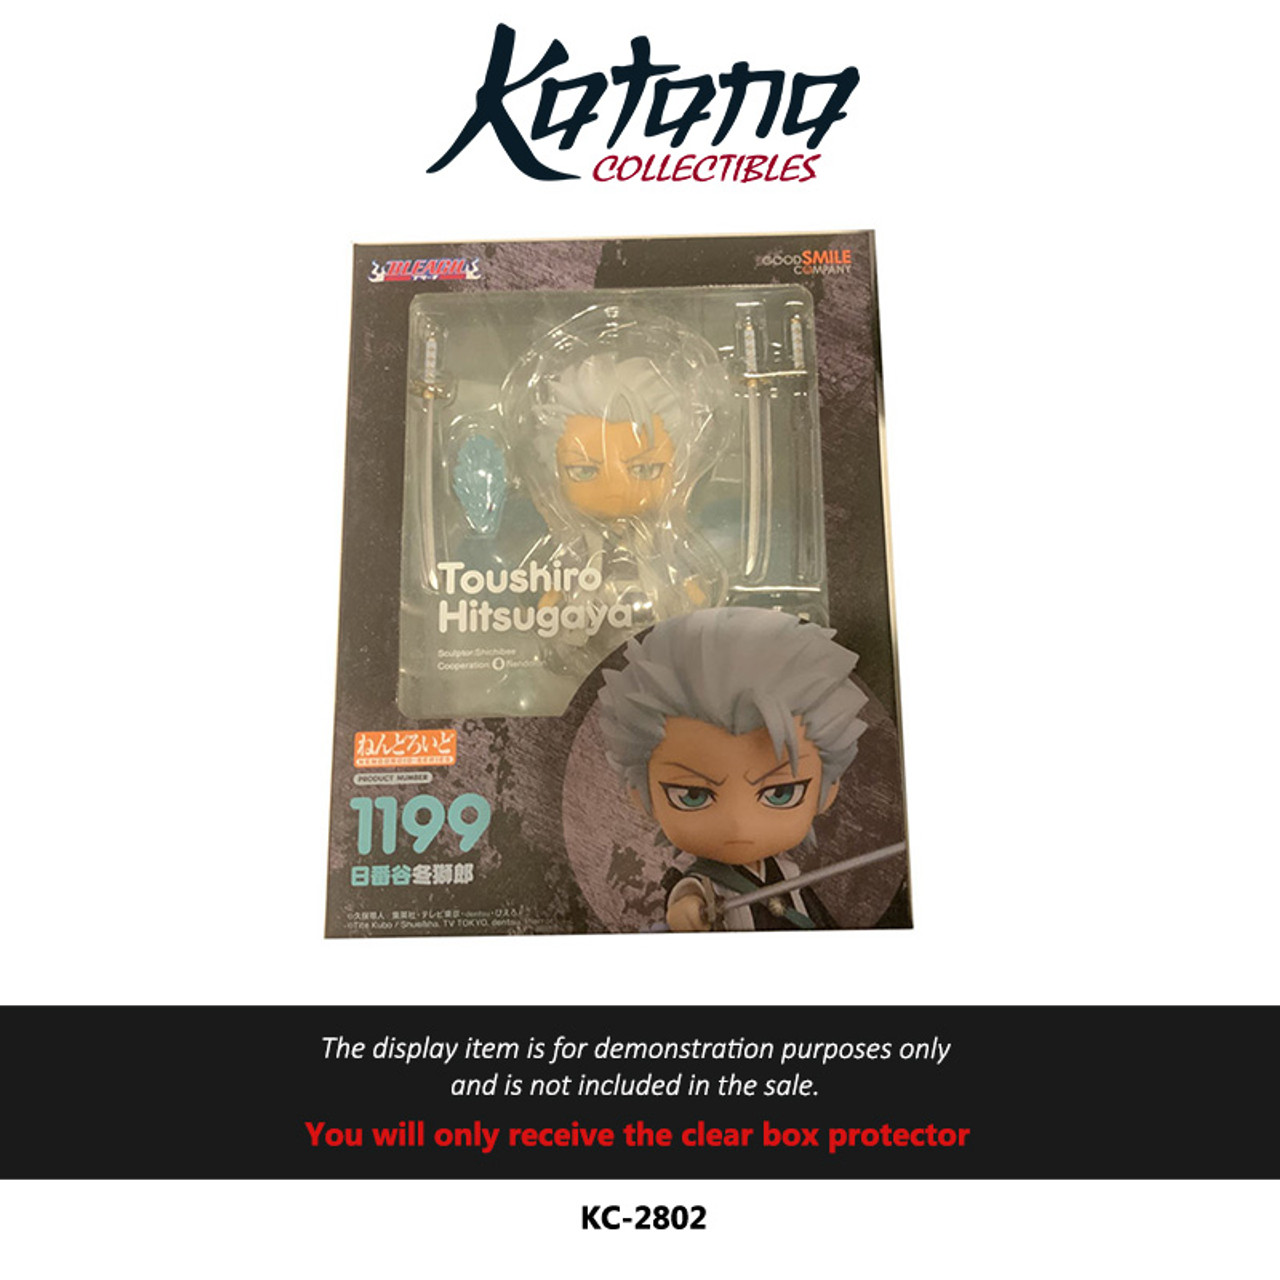 Katana Collectibles Protector For Nendoroid Toushiro 1199